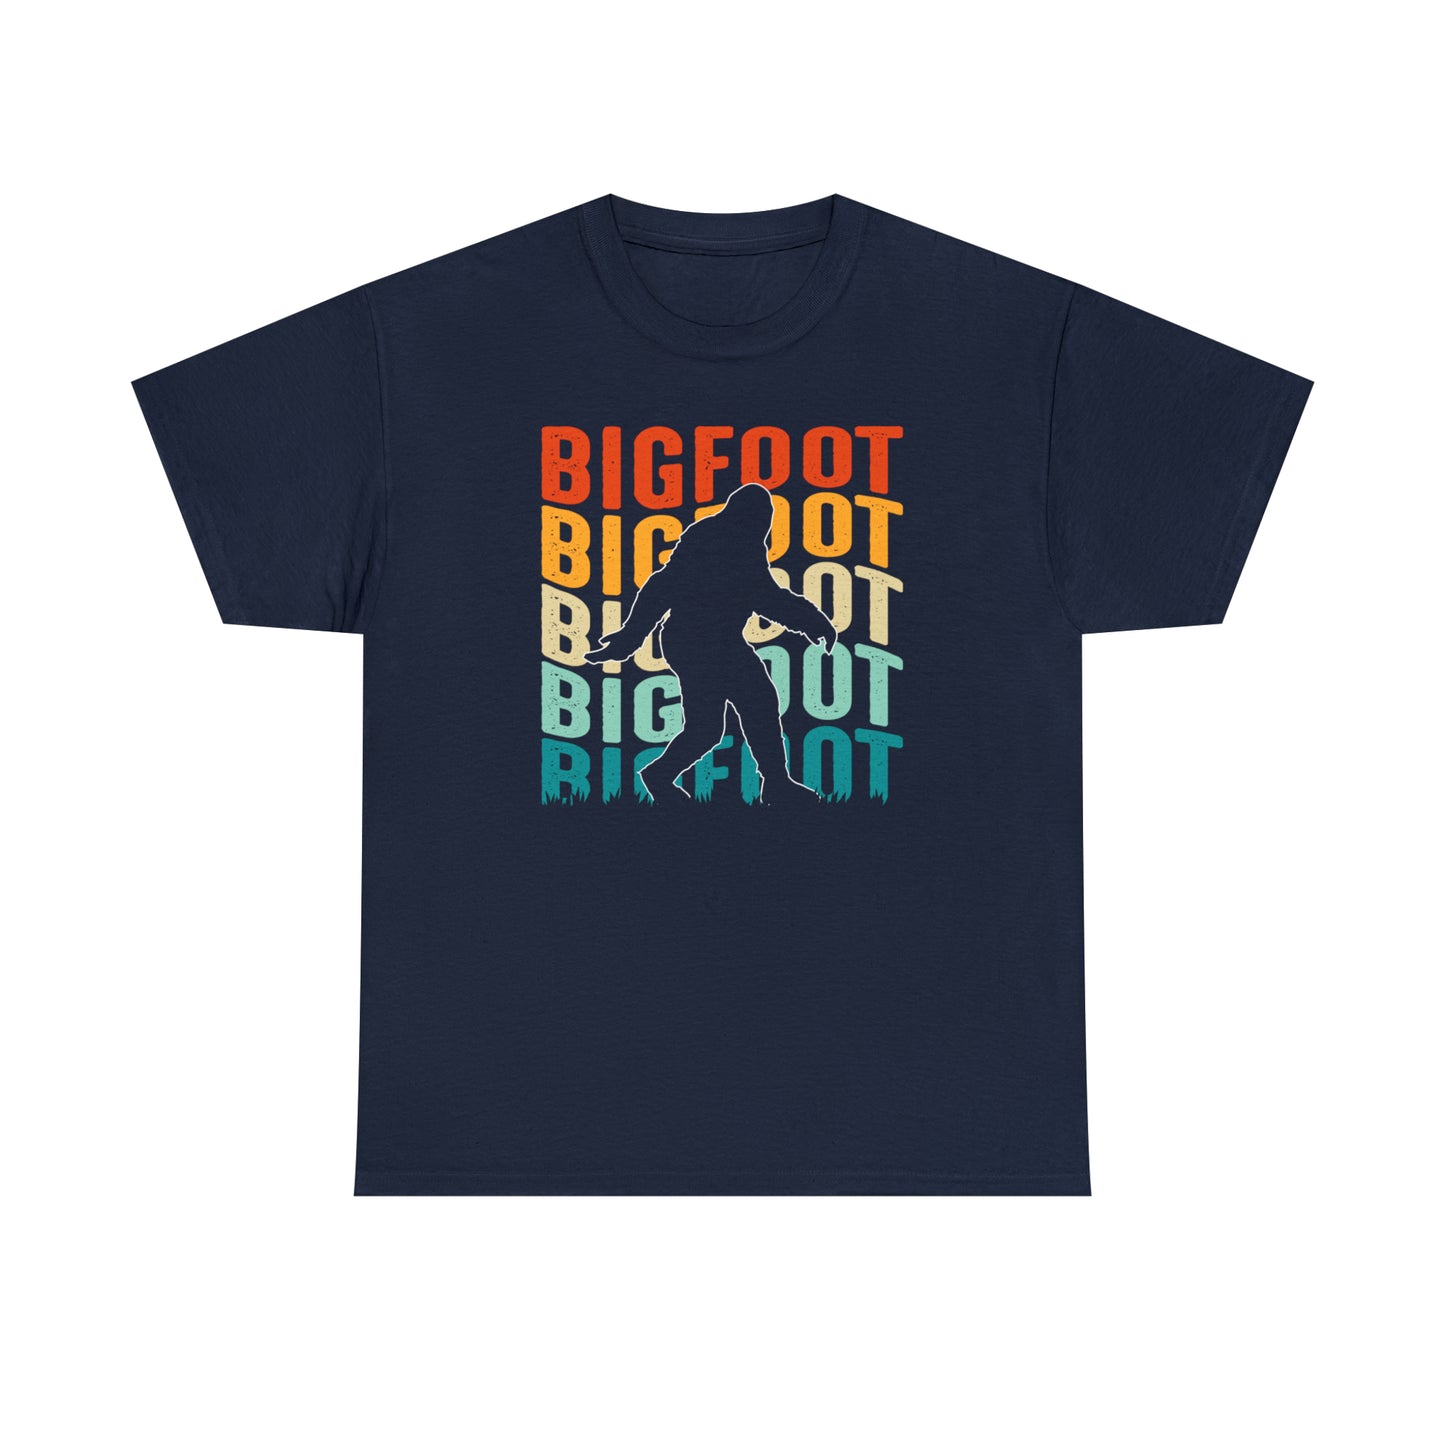 Bigfoot T-Shirt For Yeti TShirt For Sasquach T Shirt For Colorful Bigfoot Tee For Conspiracy Theory TShirt For Yeti Fan